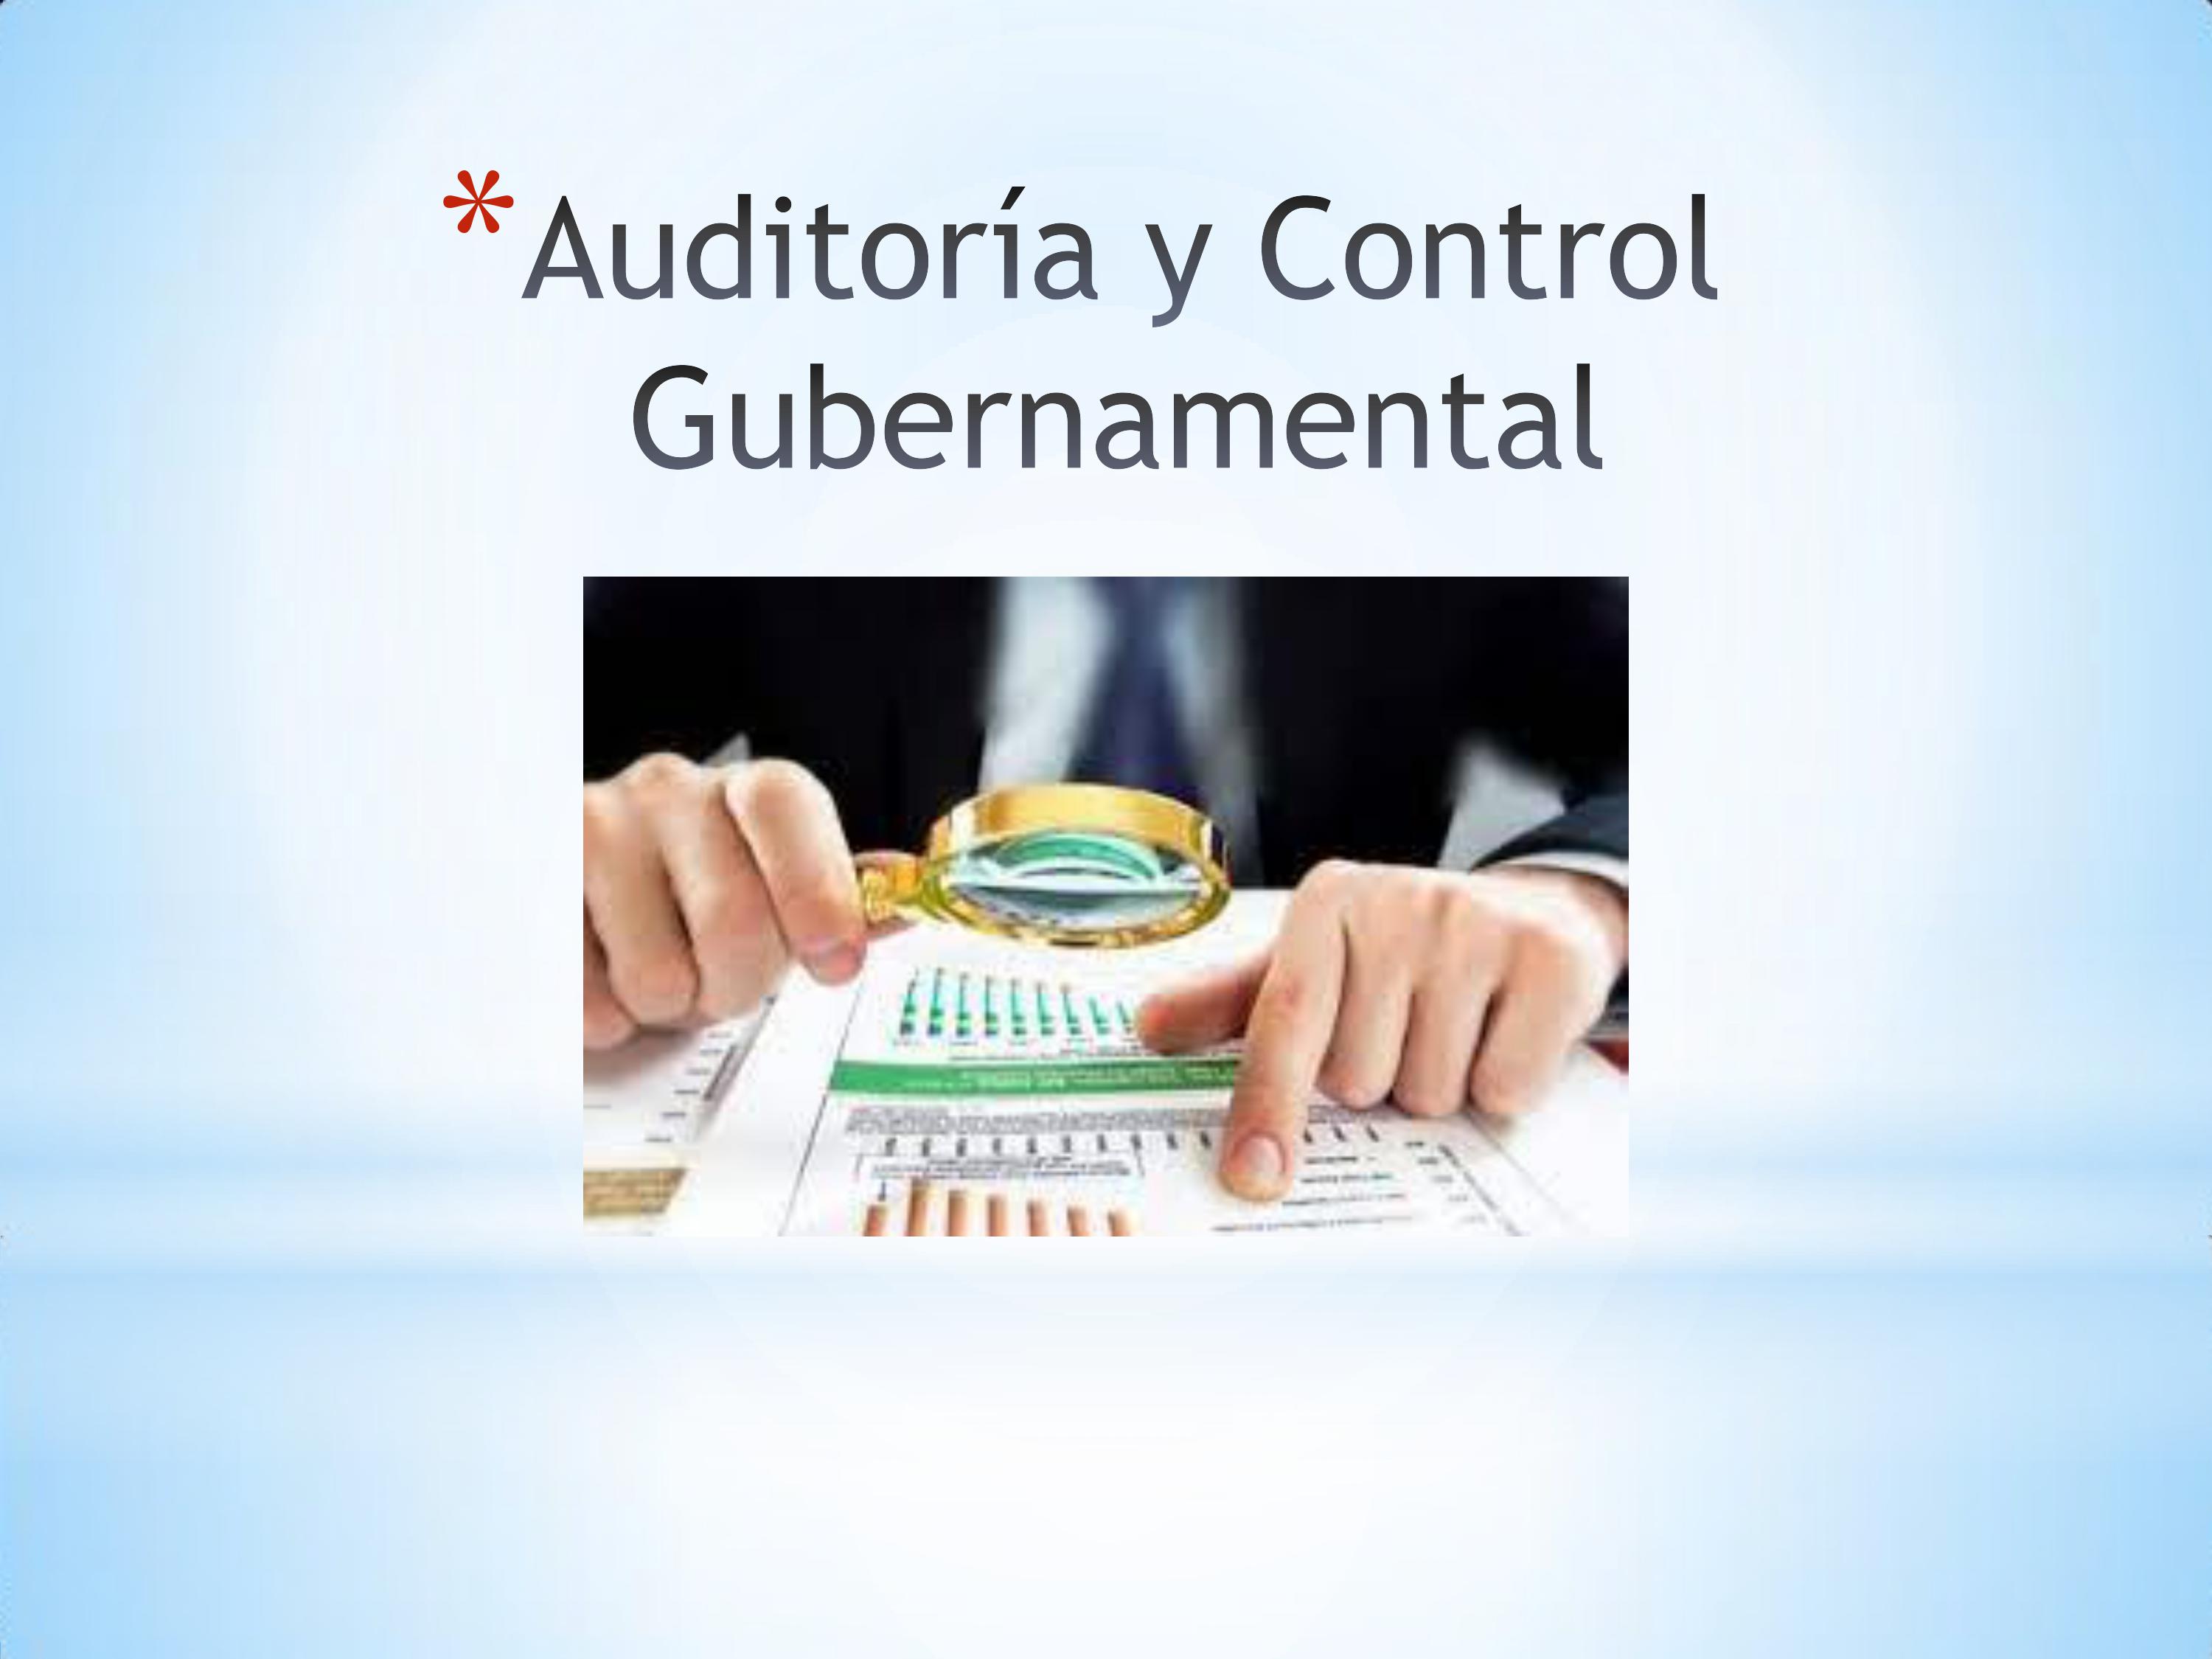 Auditoría y Control Gubernamental P1 2021